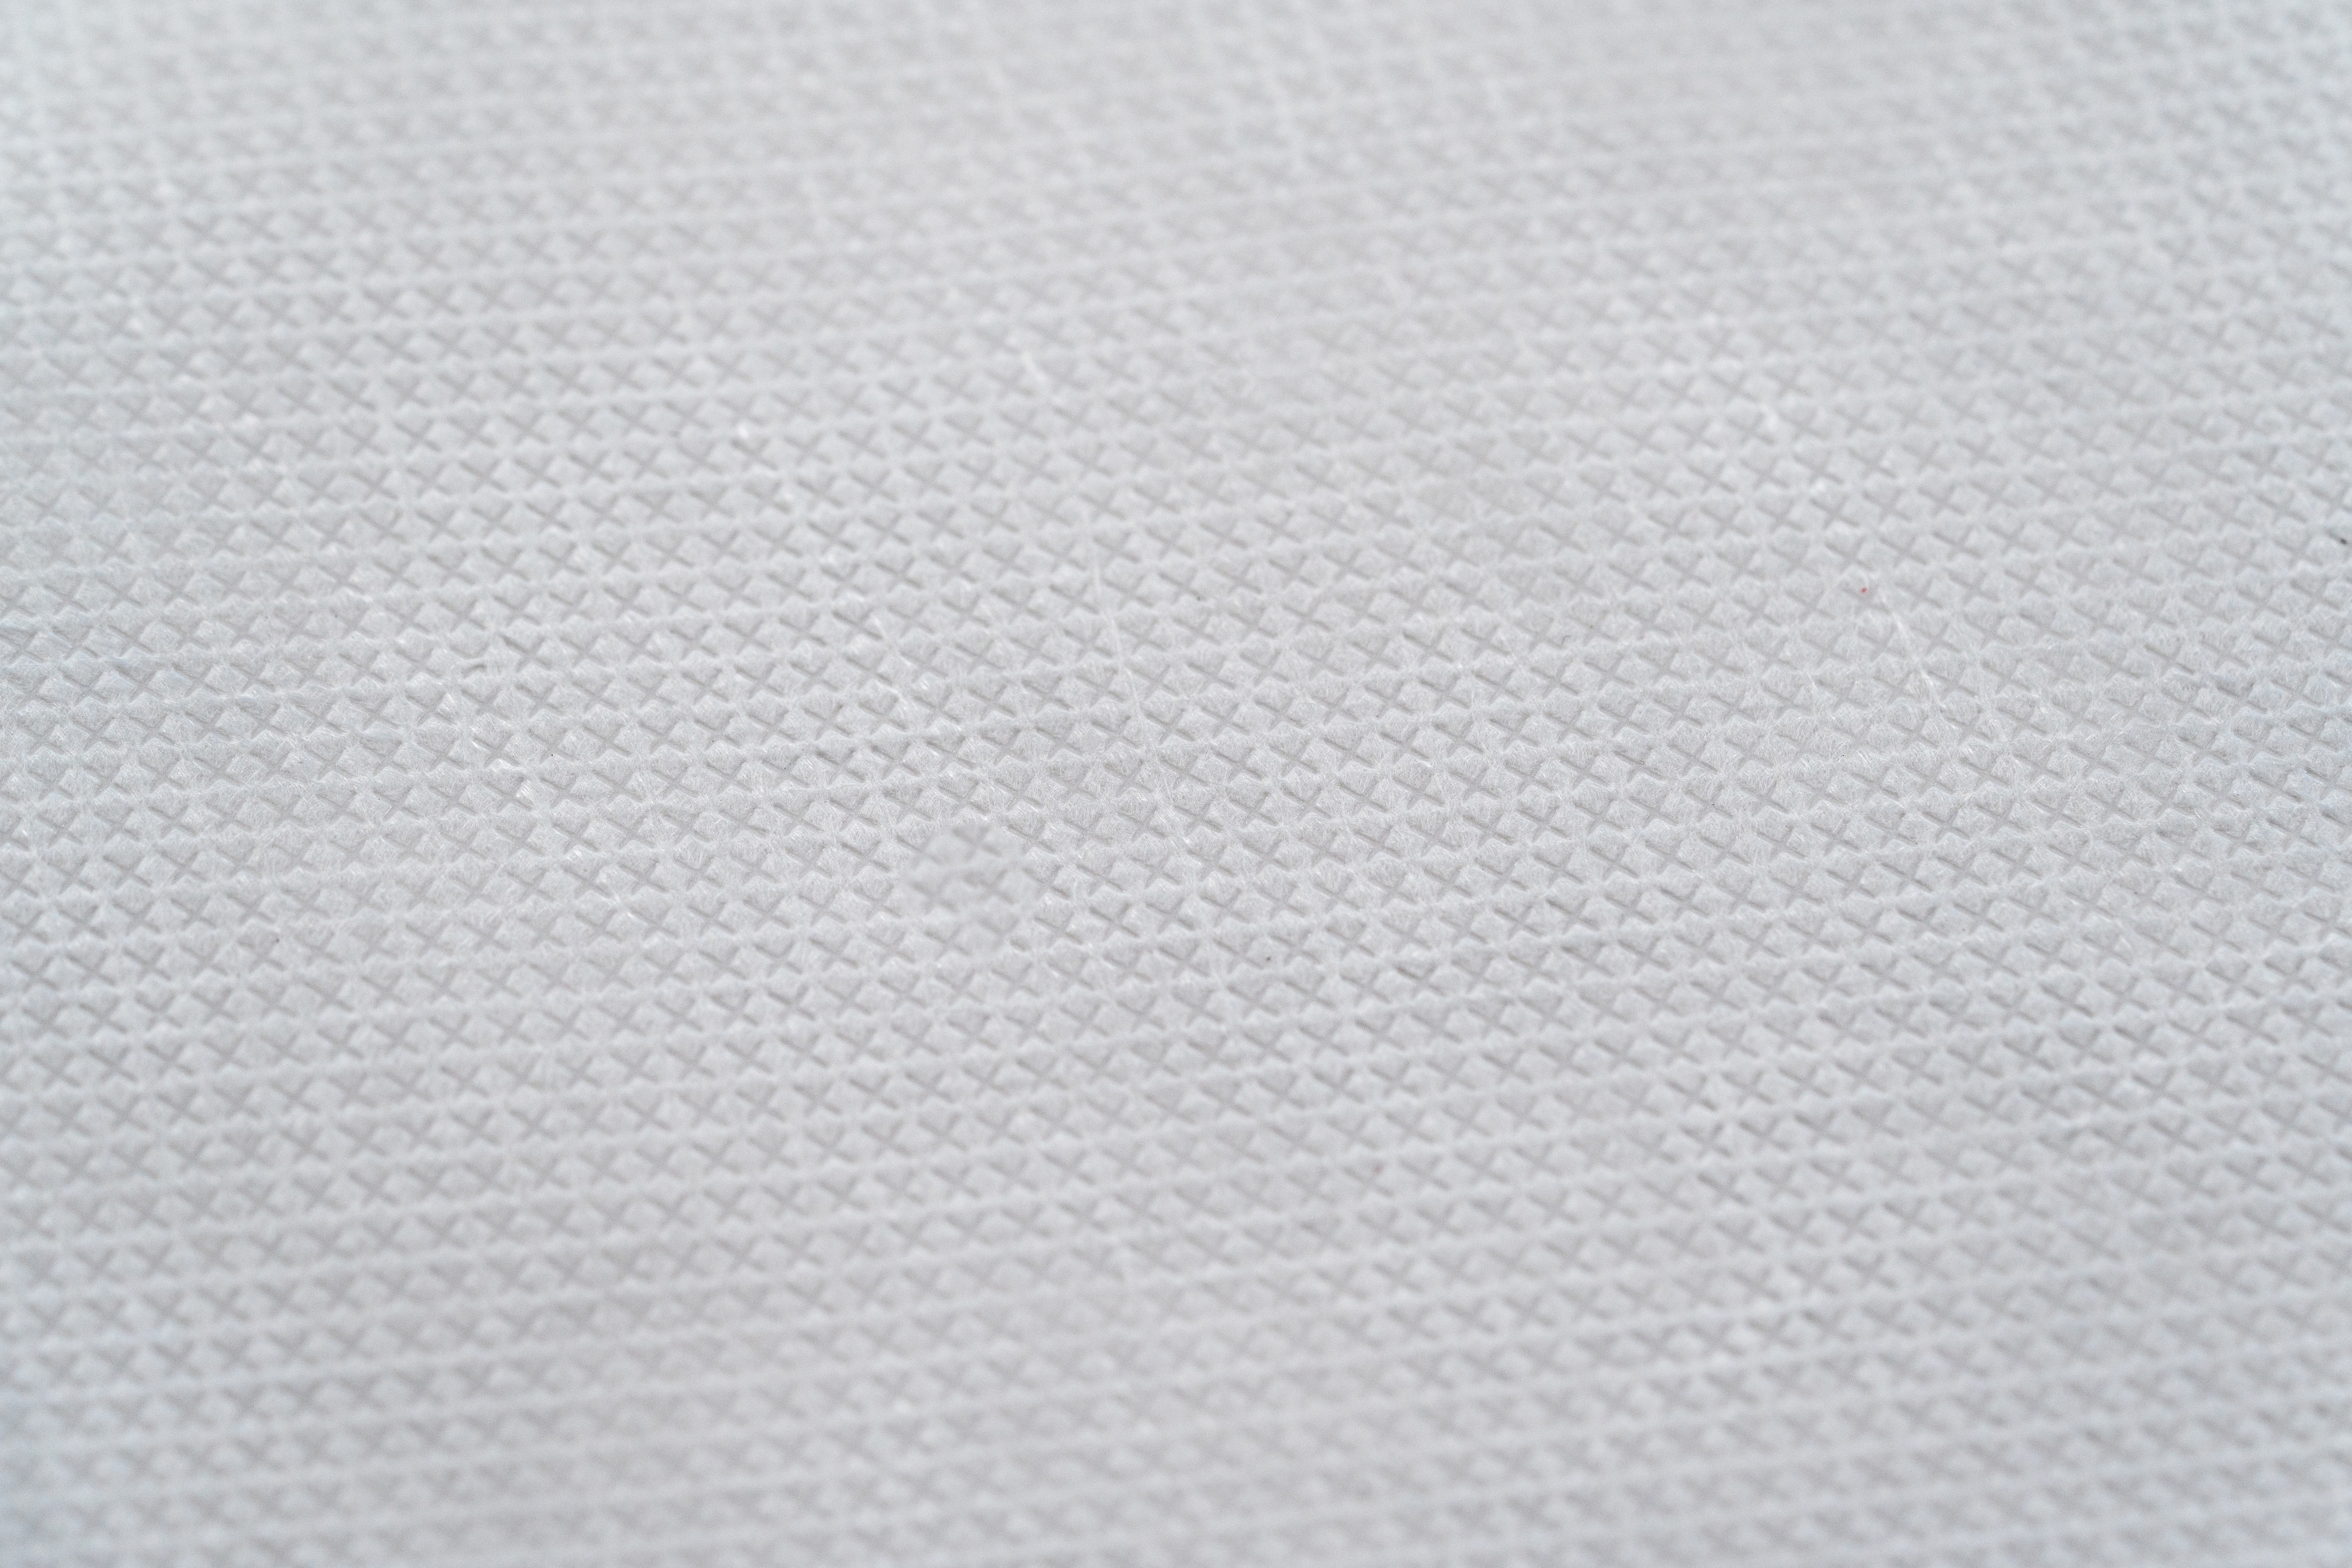 尼龍紡黏不織布 (100% Nylon Spunbond Fabric) - 寢具家具用紡黏不織布 (For Bedding & Furniture)